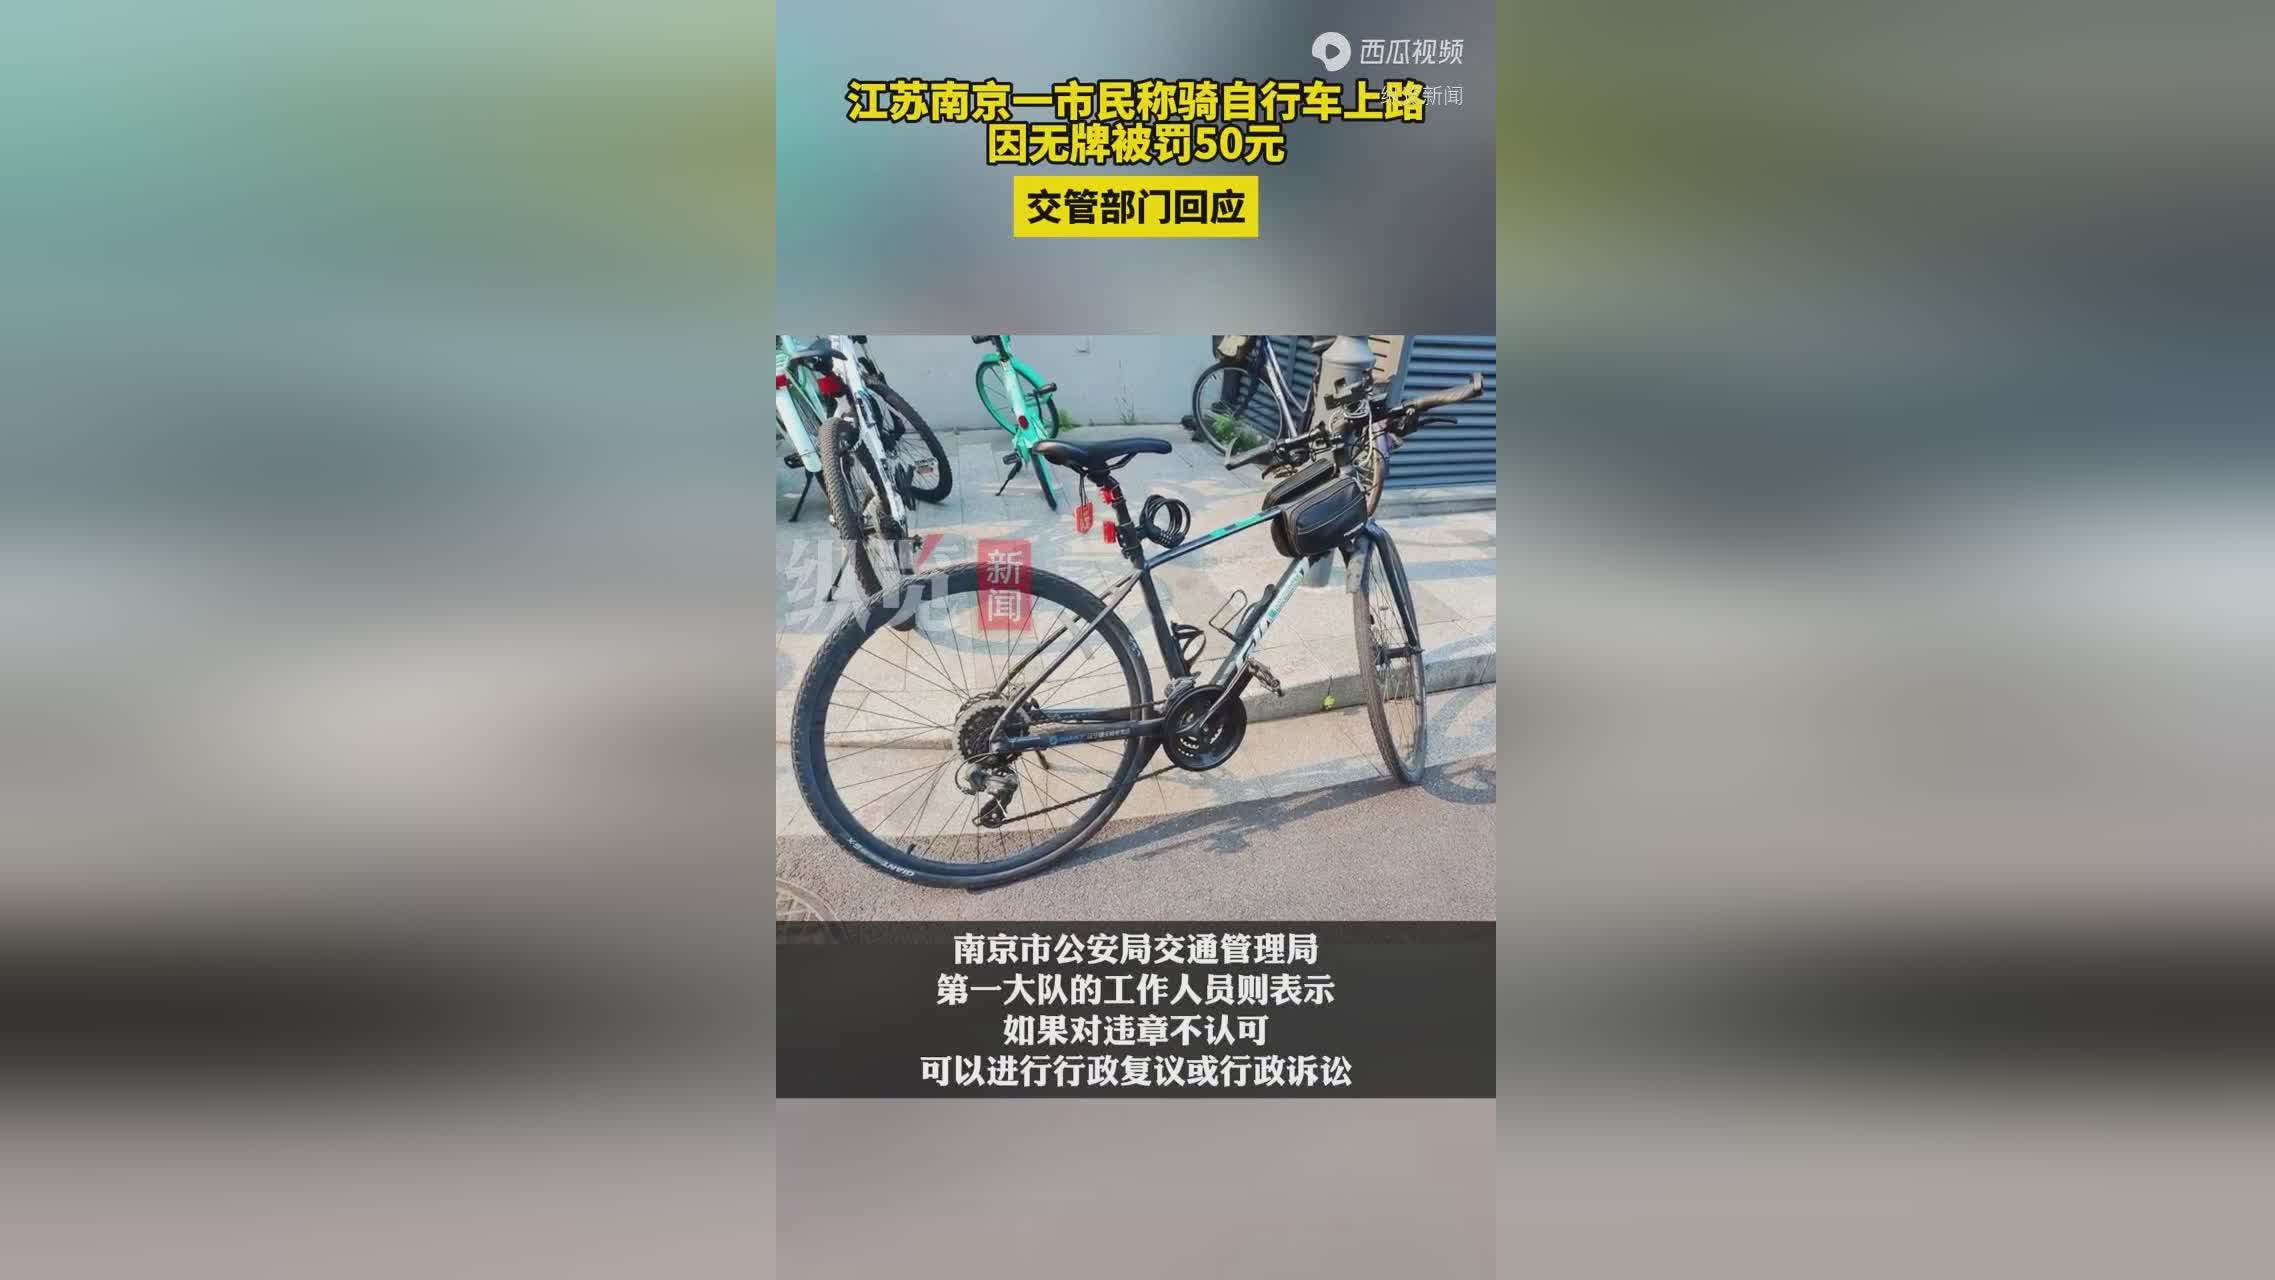 南京一市民称骑自行车上路因无牌被罚50元 内地回应